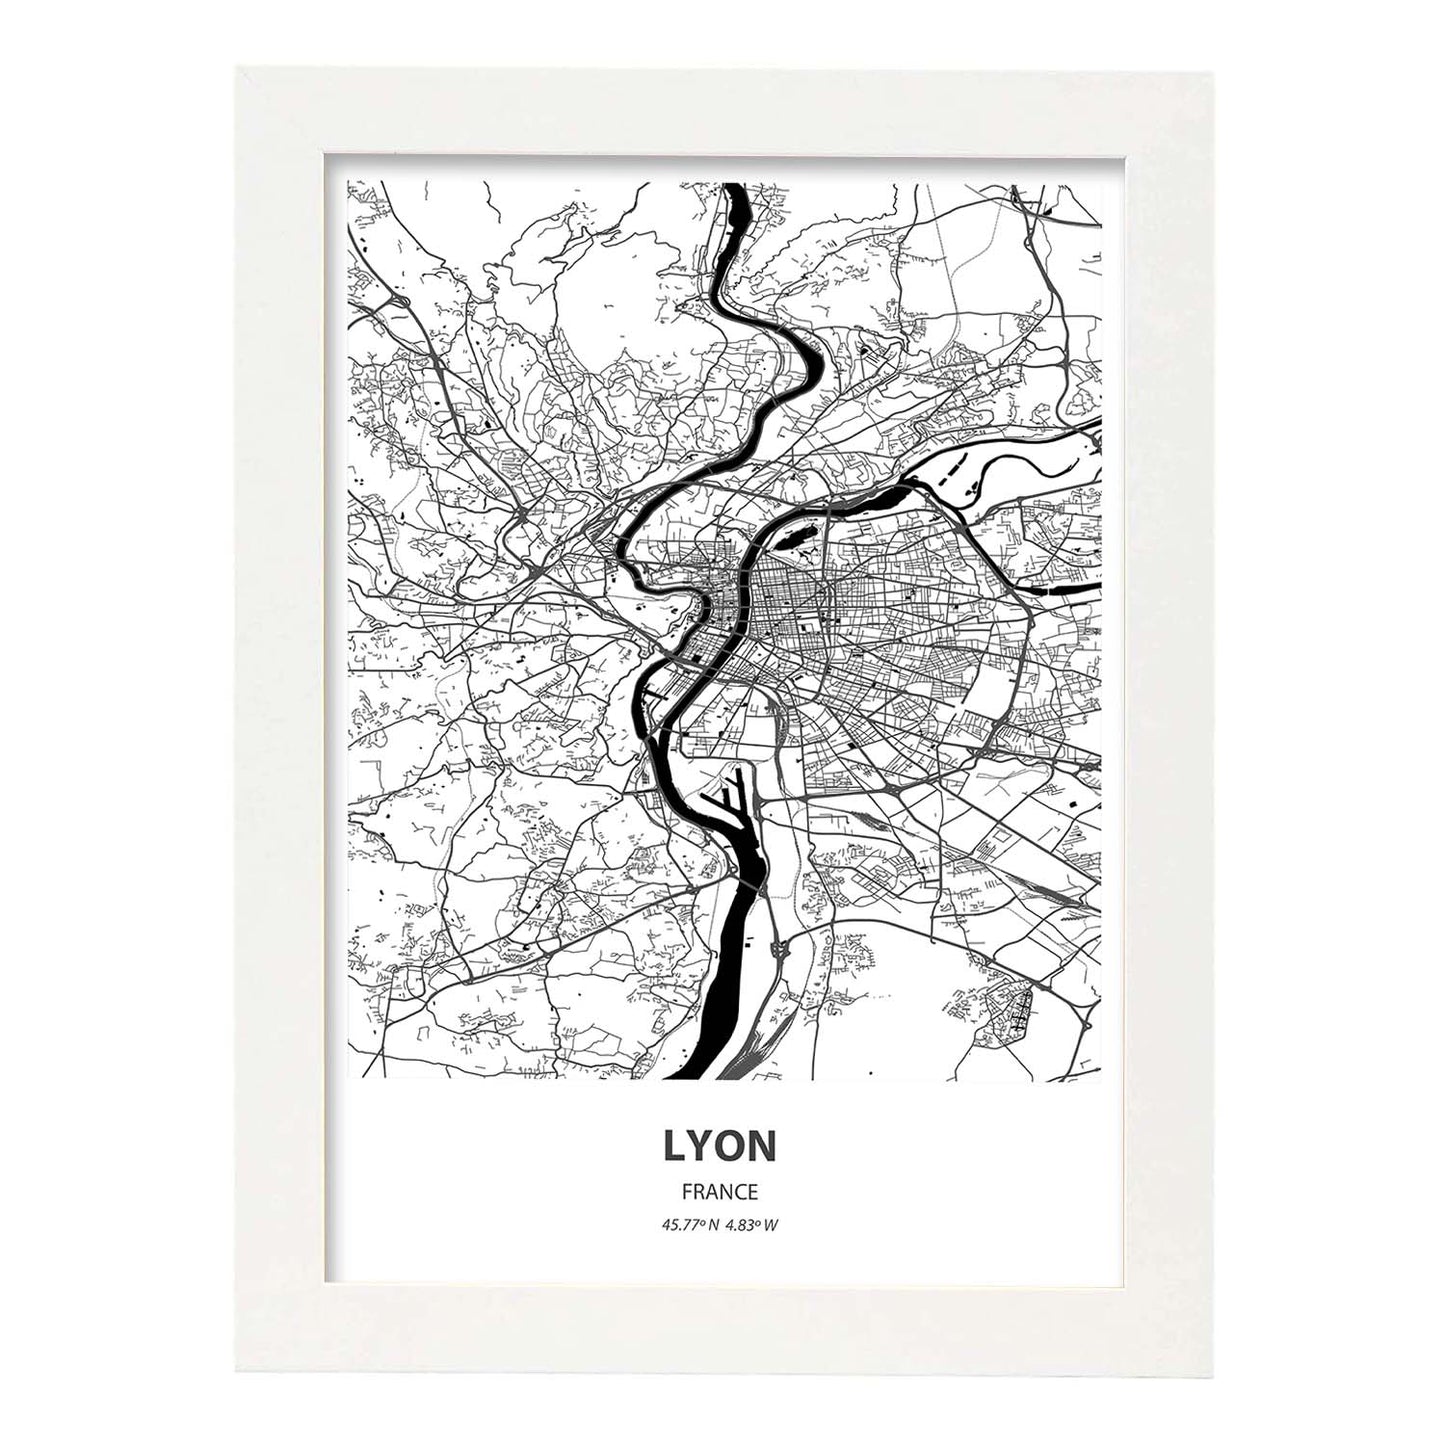 Poster con mapa de Lyon - Francia. Láminas de ciudades de Francia con mares y ríos en color negro.-Artwork-Nacnic-A3-Marco Blanco-Nacnic Estudio SL